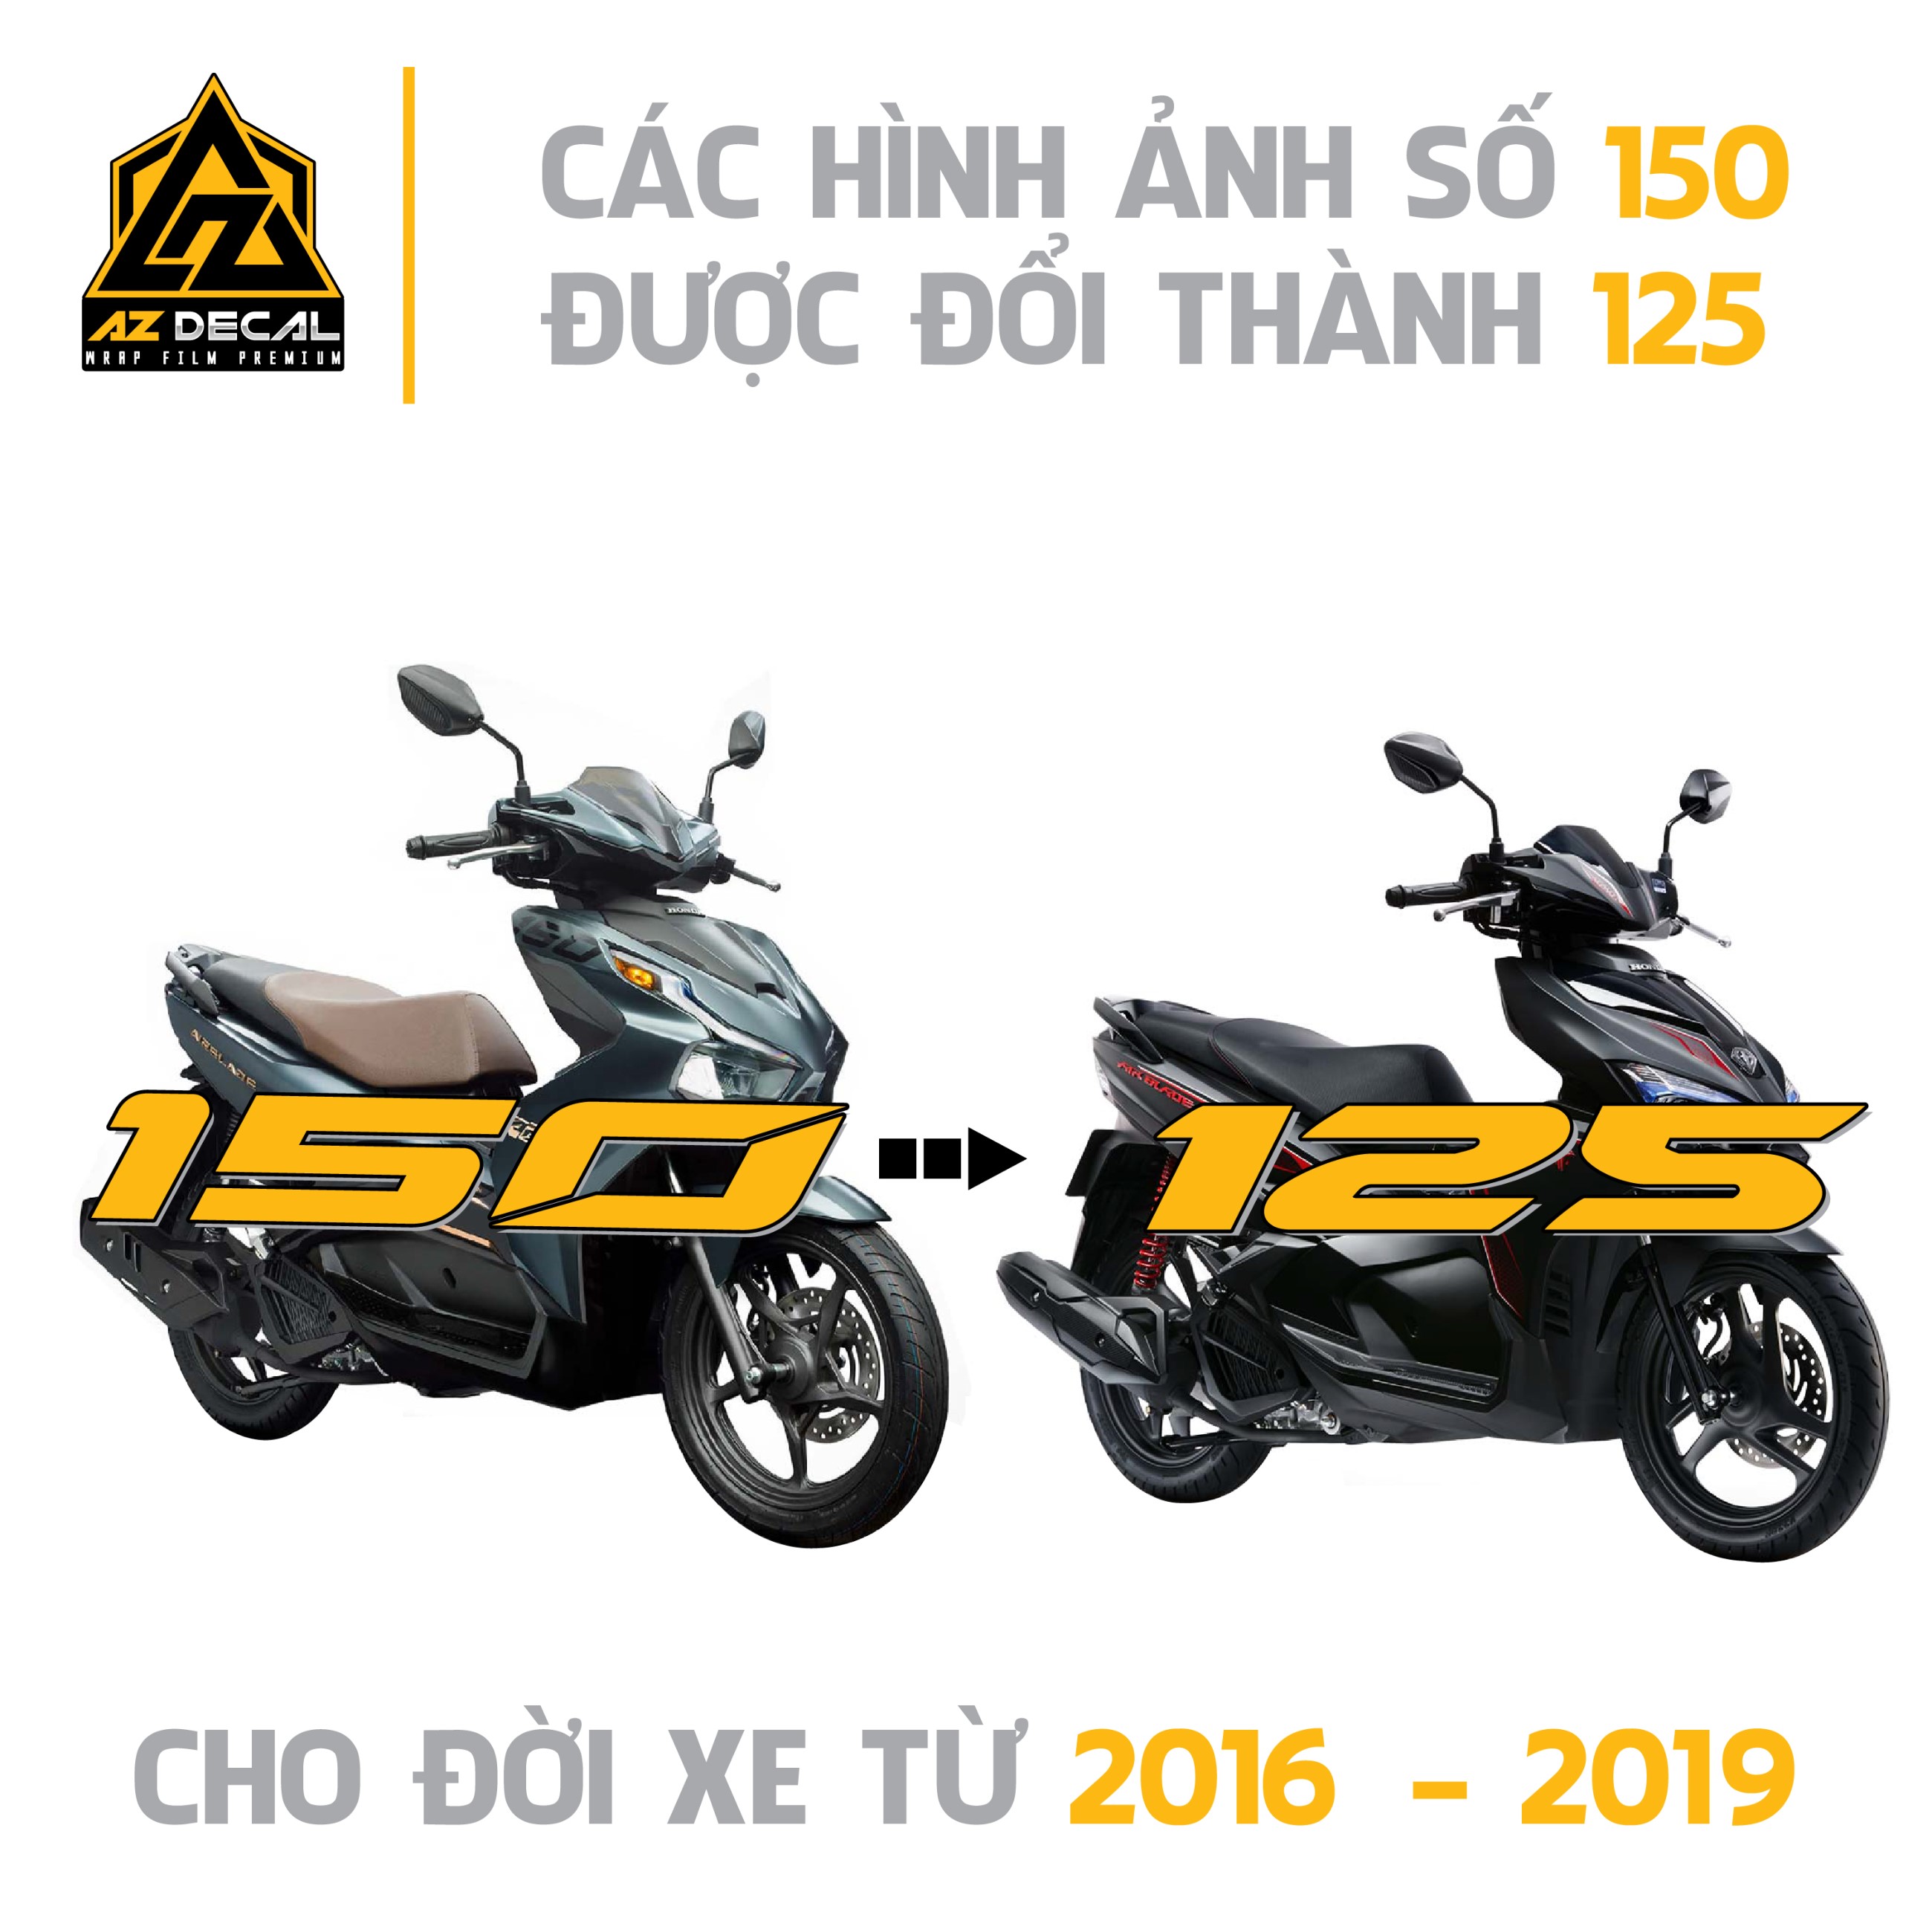 AB 2019 Sơn full xe màu trắng ngọc trai